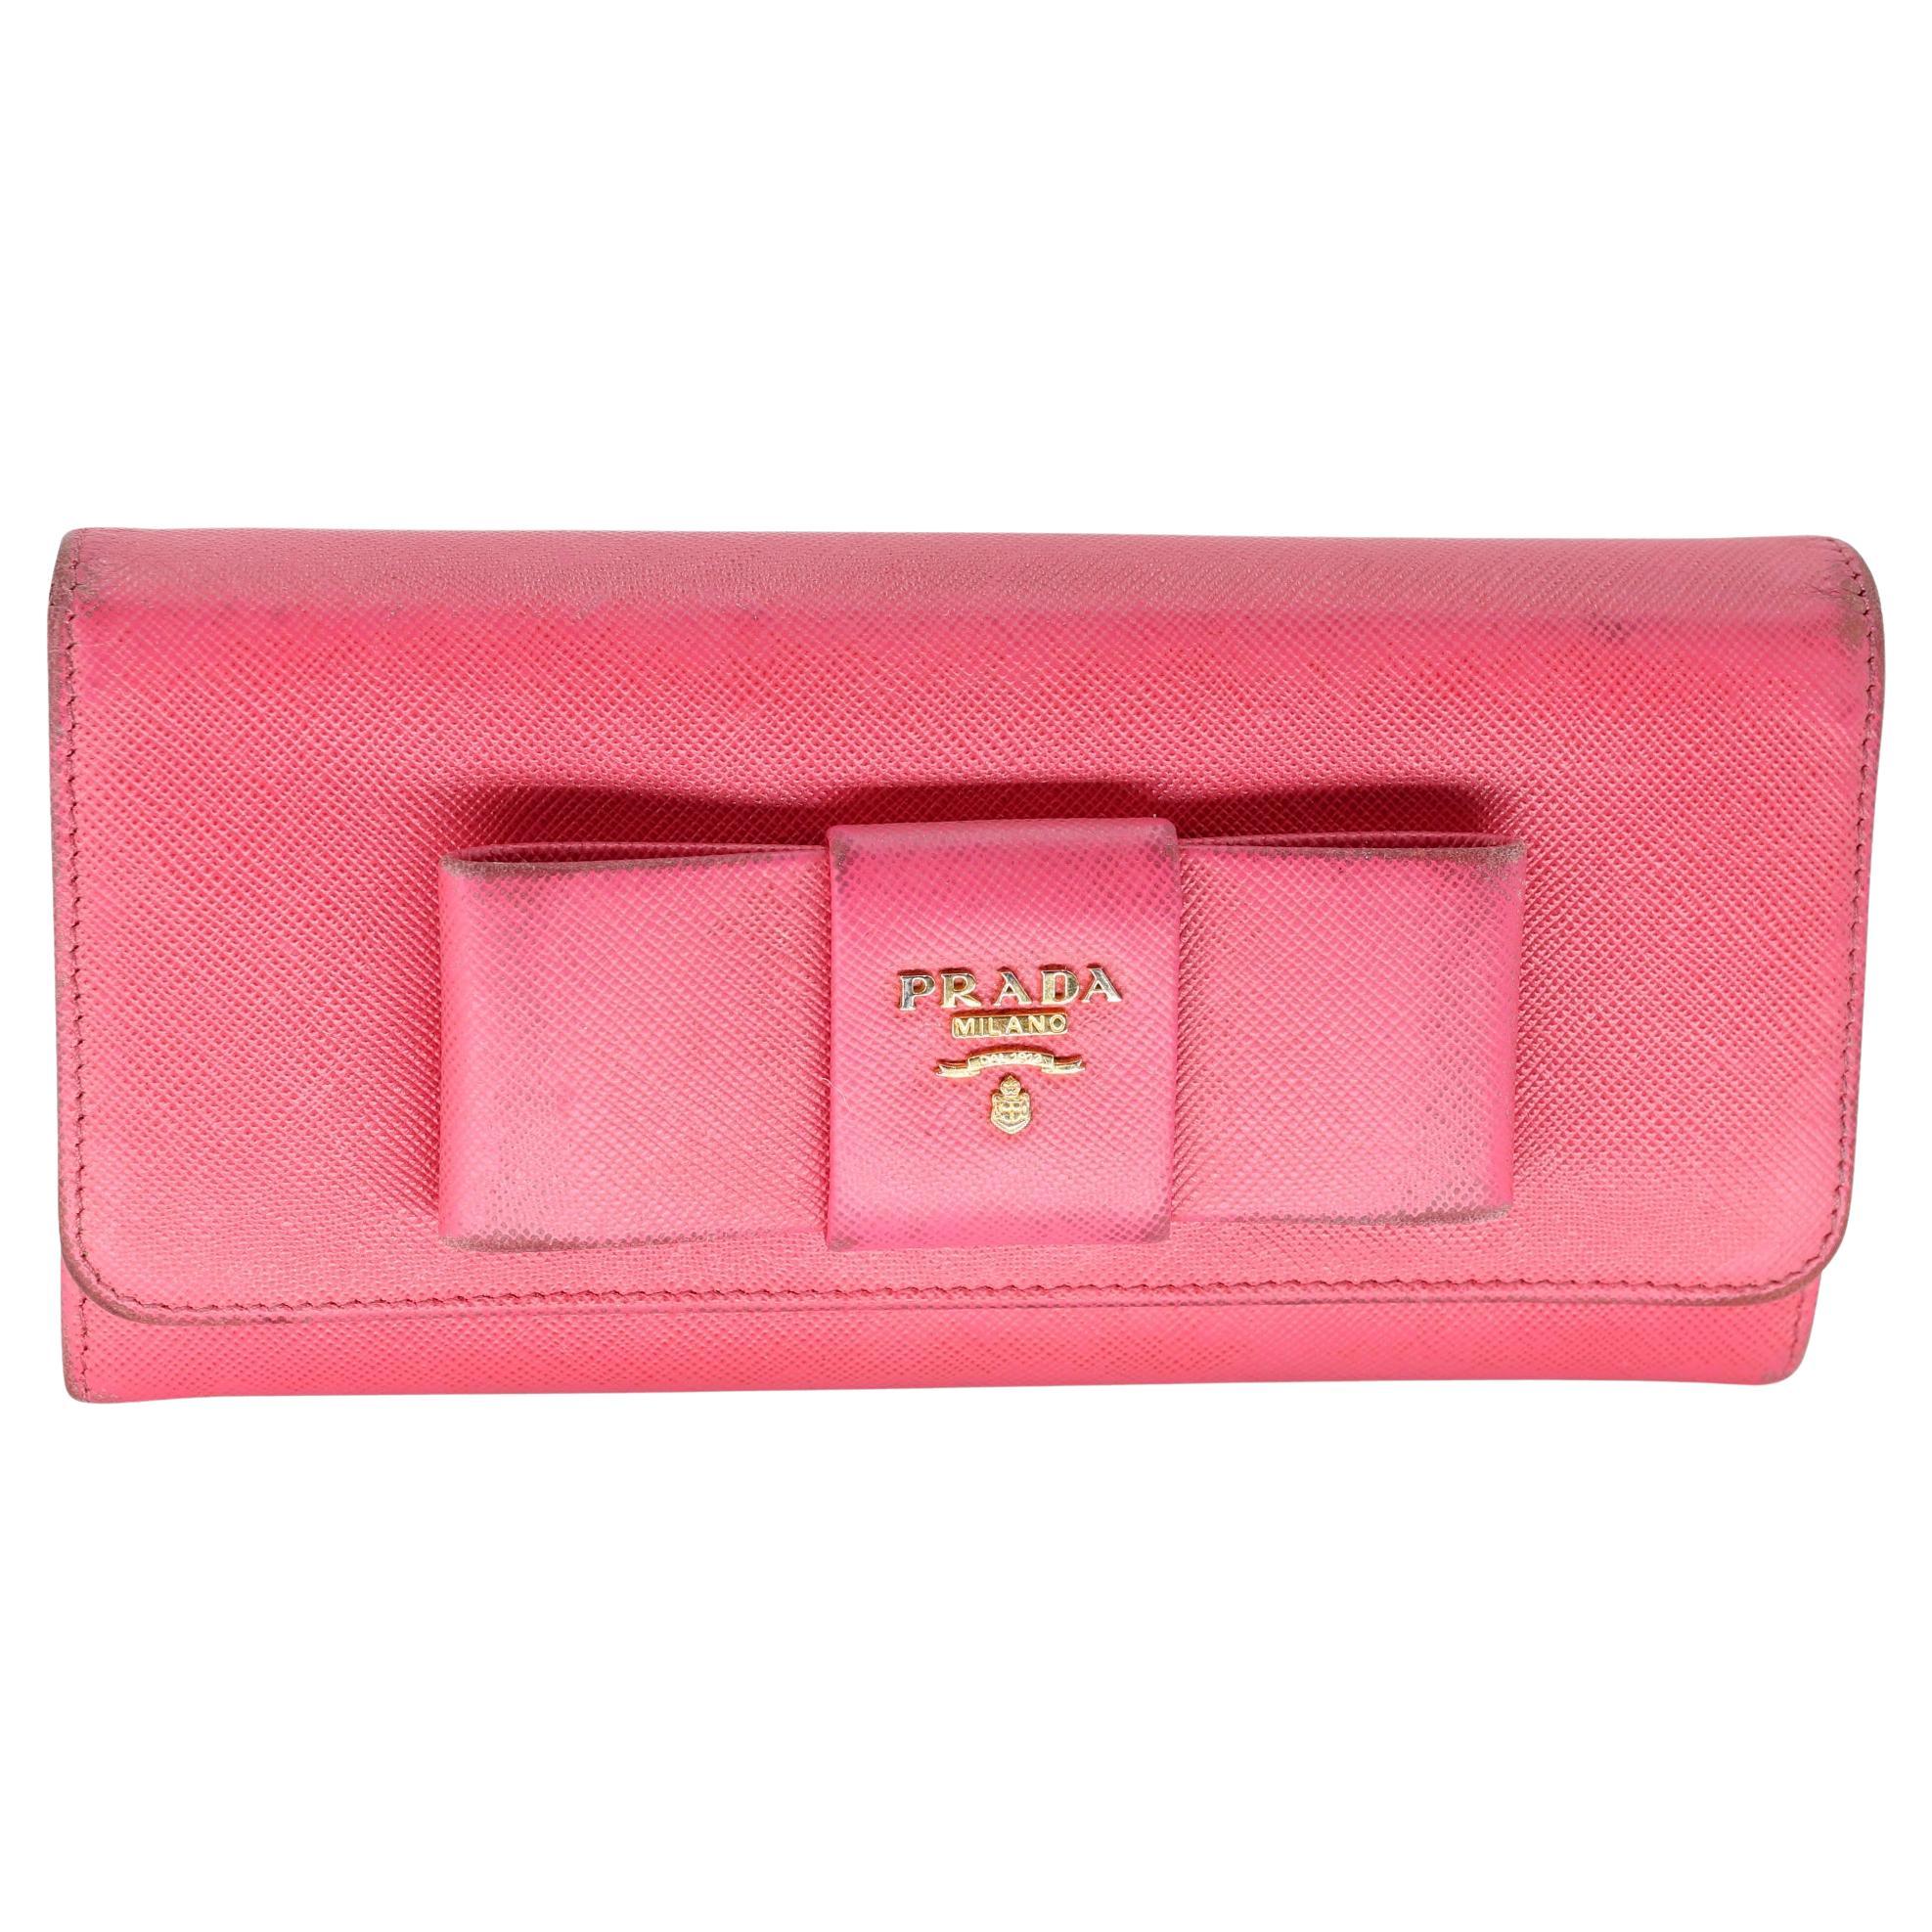 Prada Saffiano Peonia Fiocco Bow Pink Wallet PR-W1005P-A005